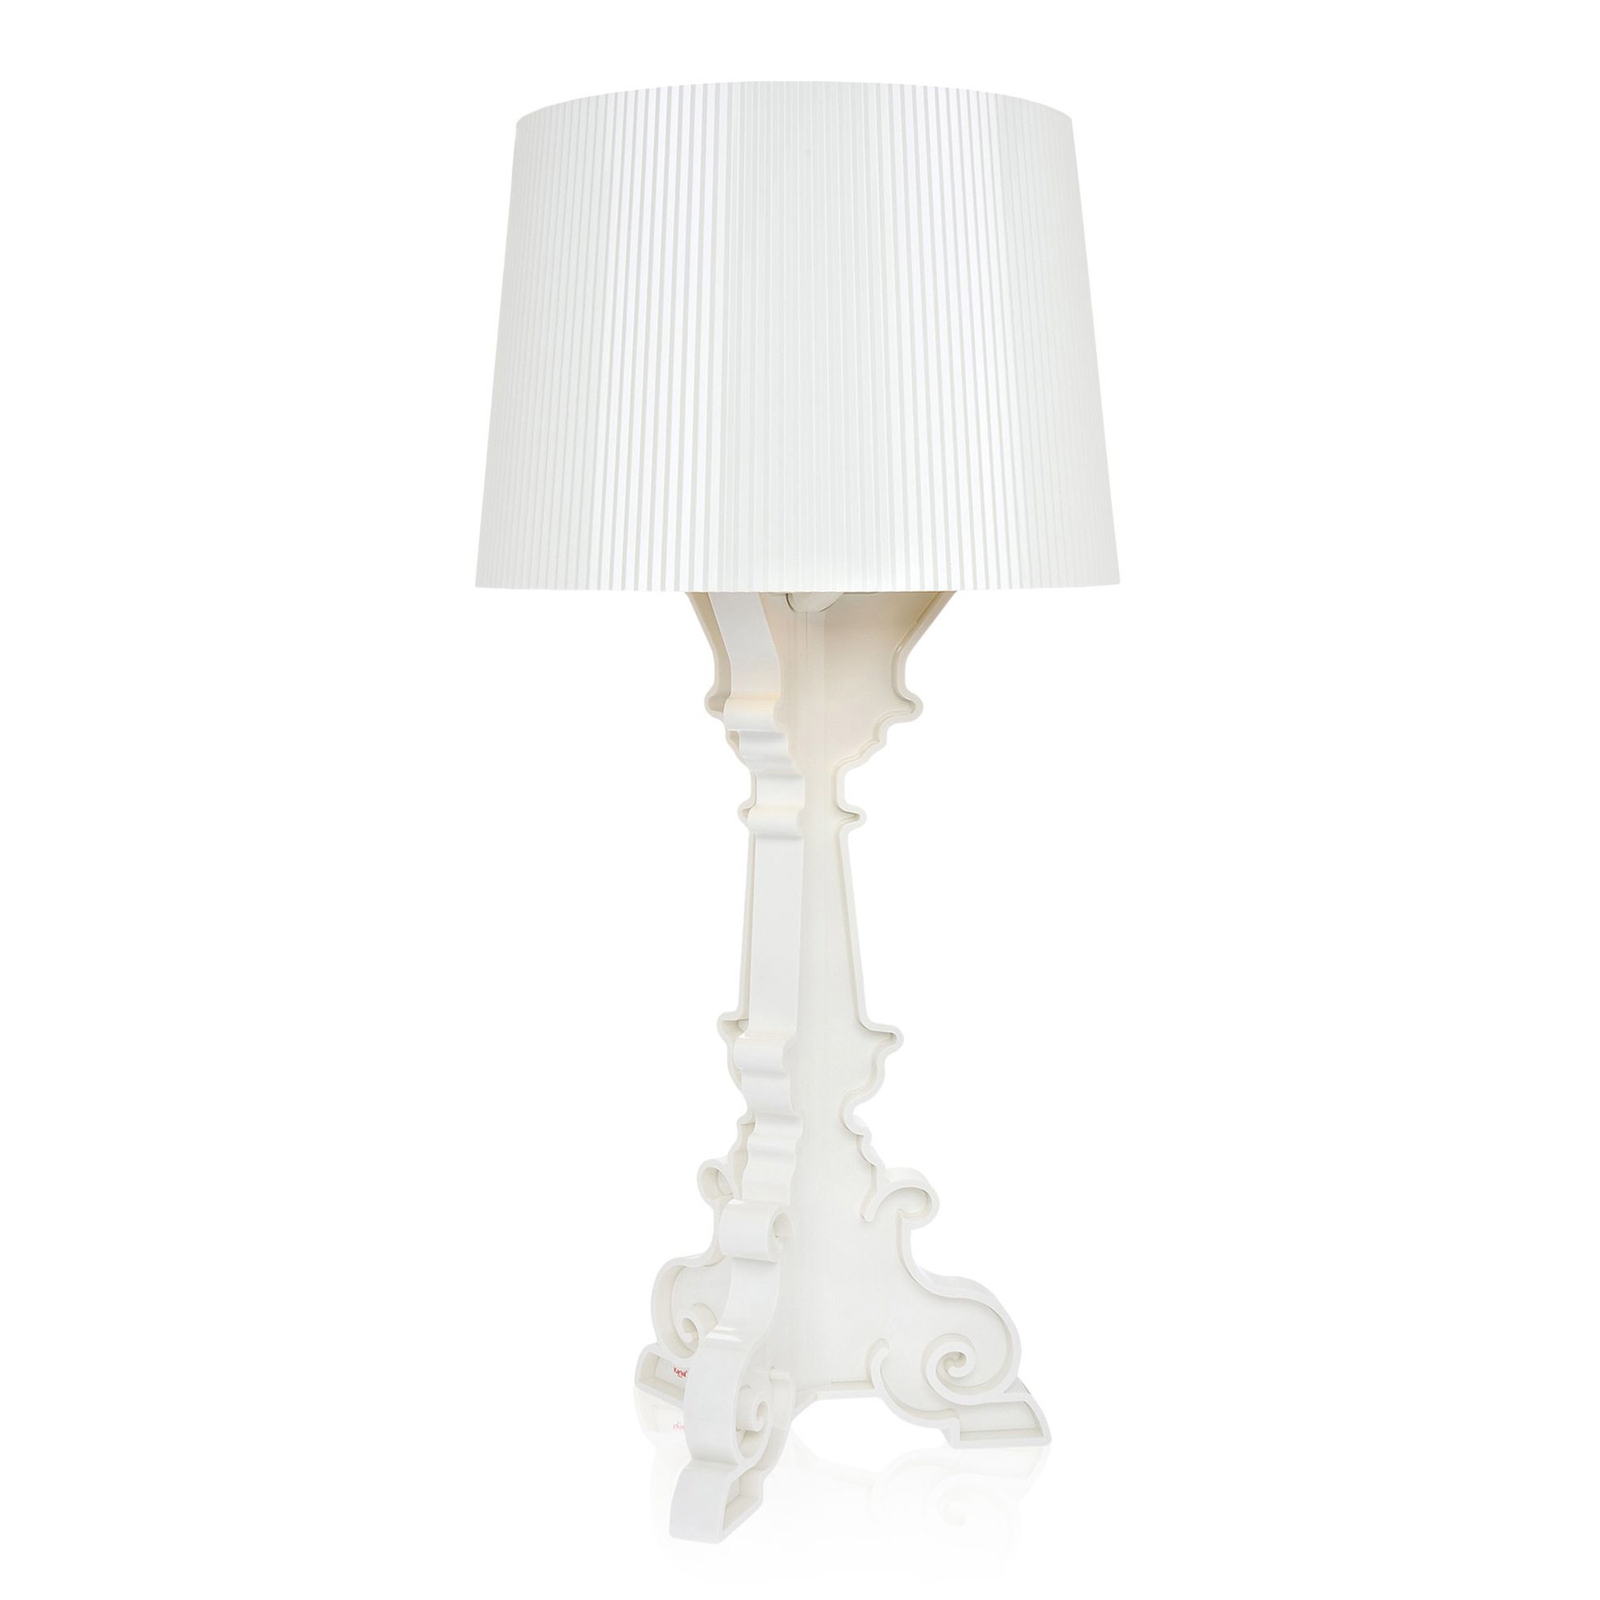 Kartell Bourgie stolová LED lampa E14, biela/zlatá